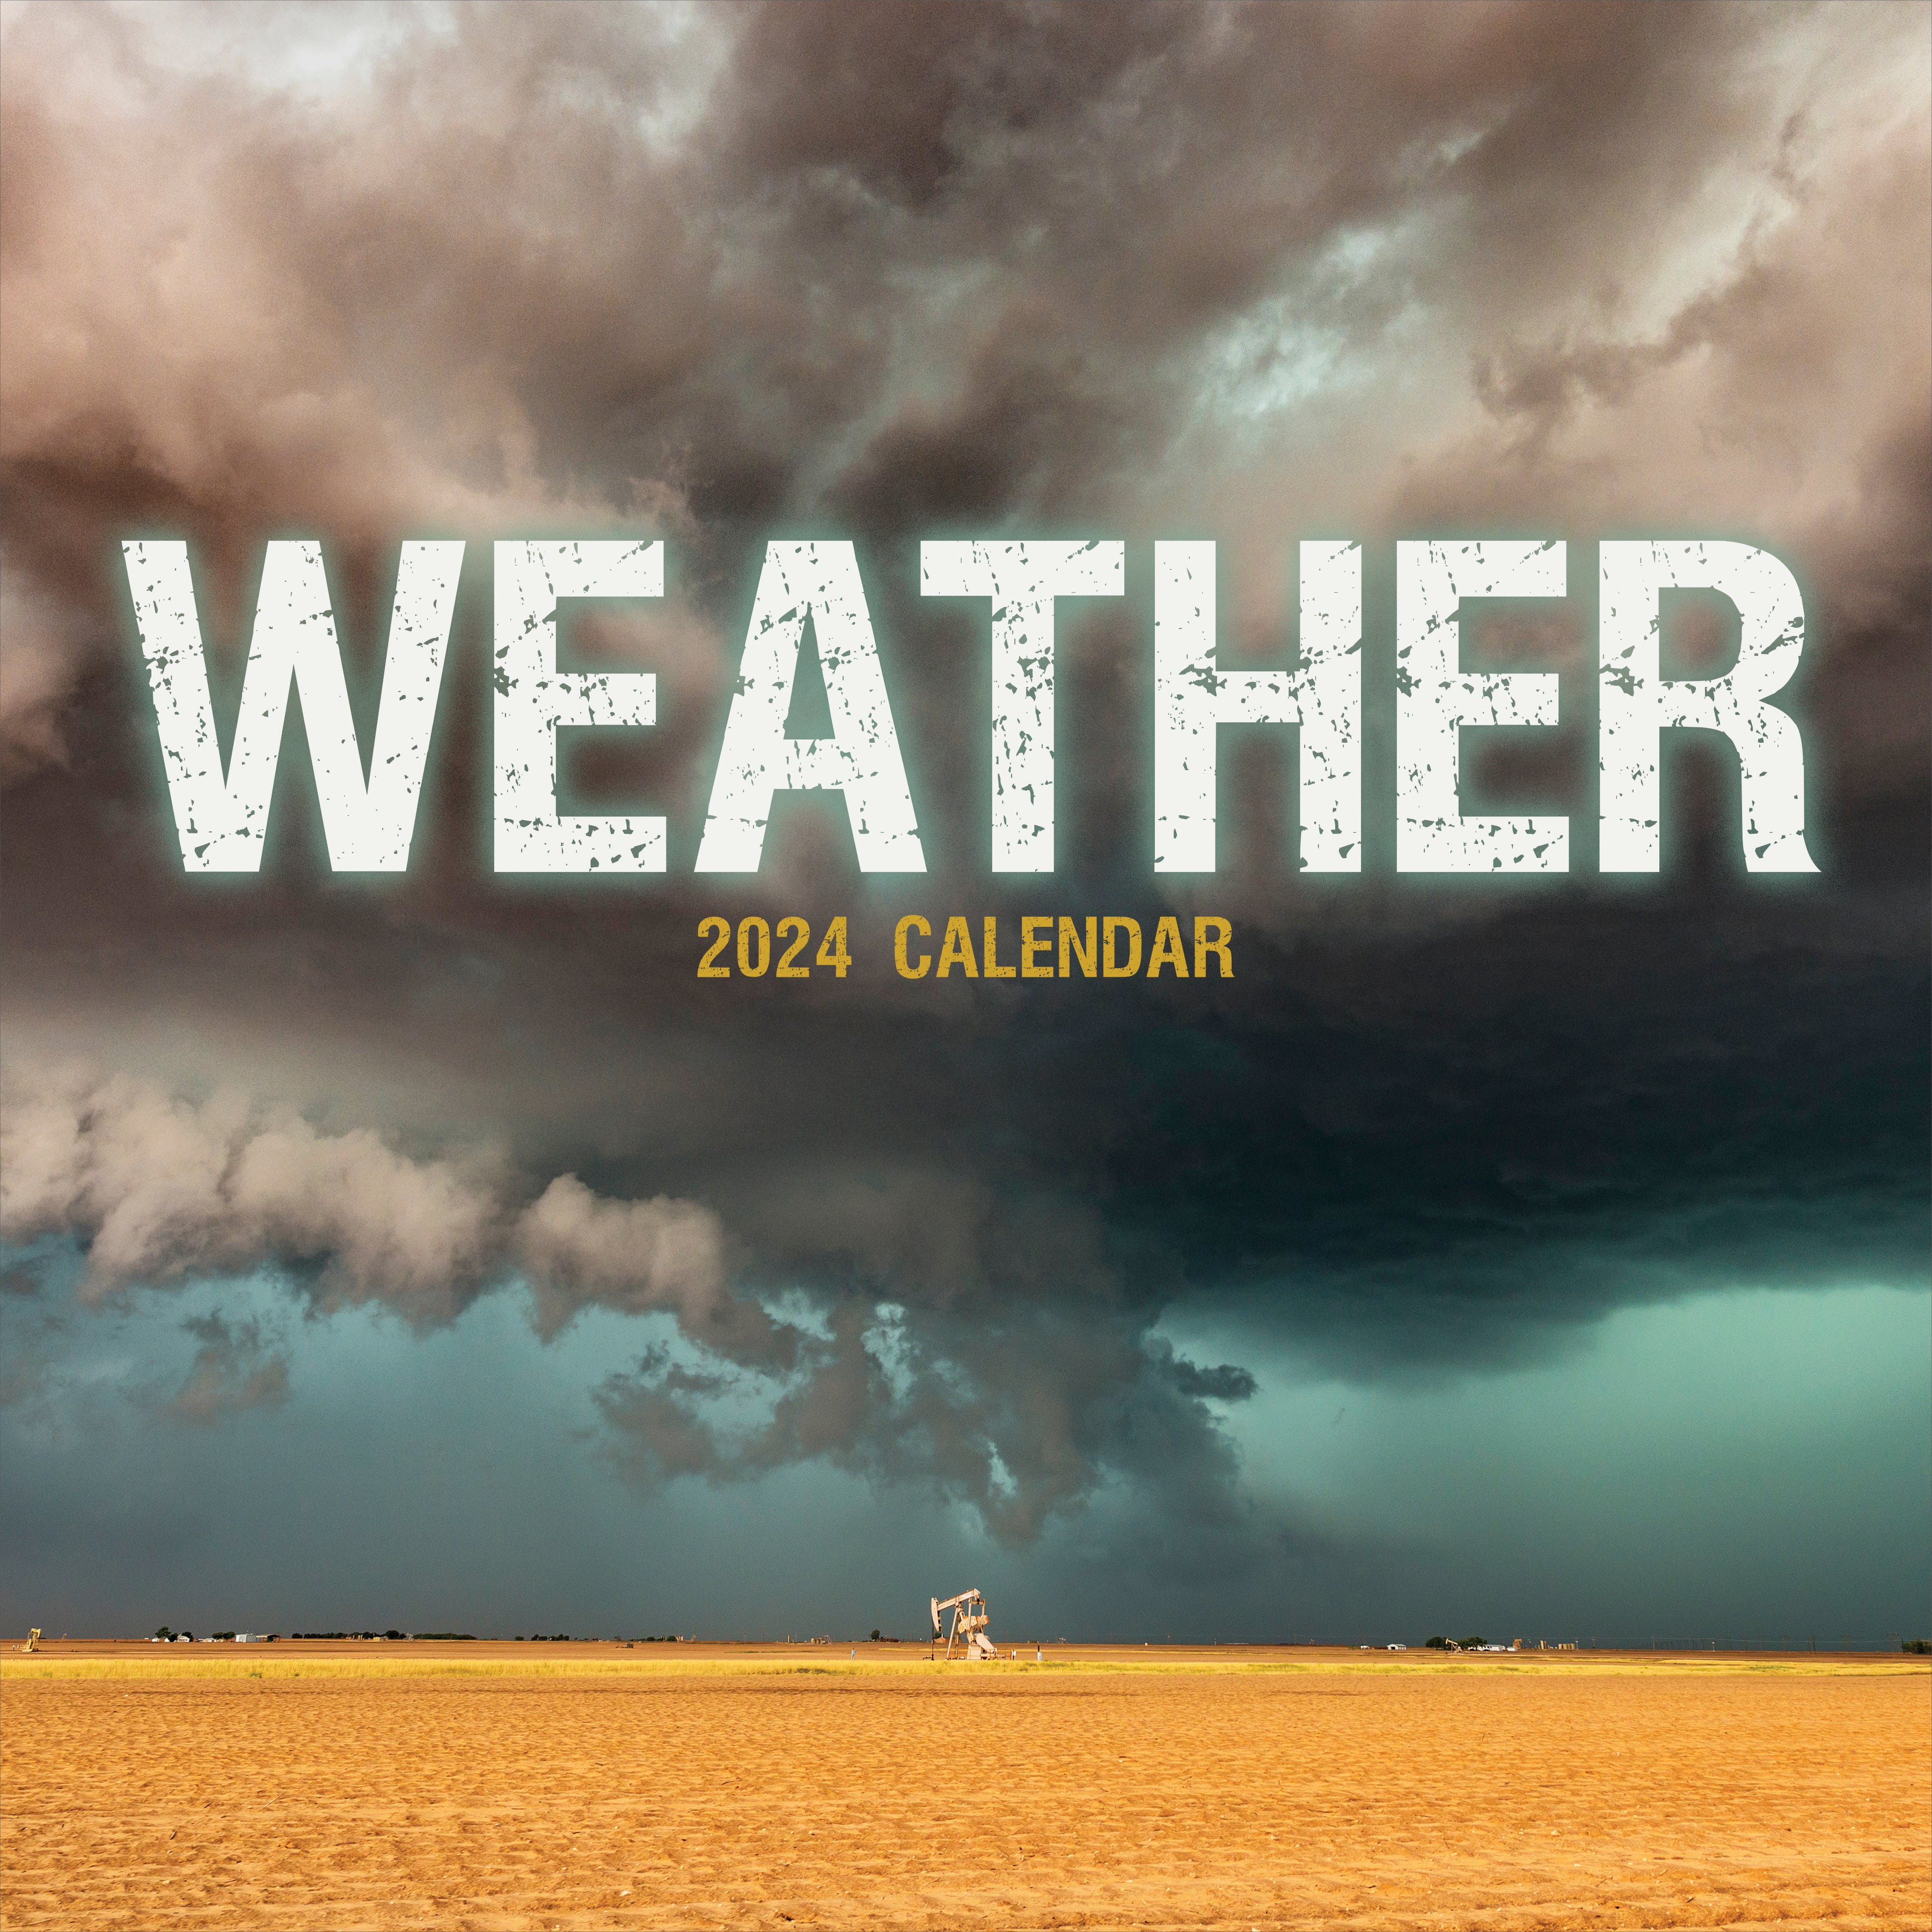 2024 Weather Wall Calendar